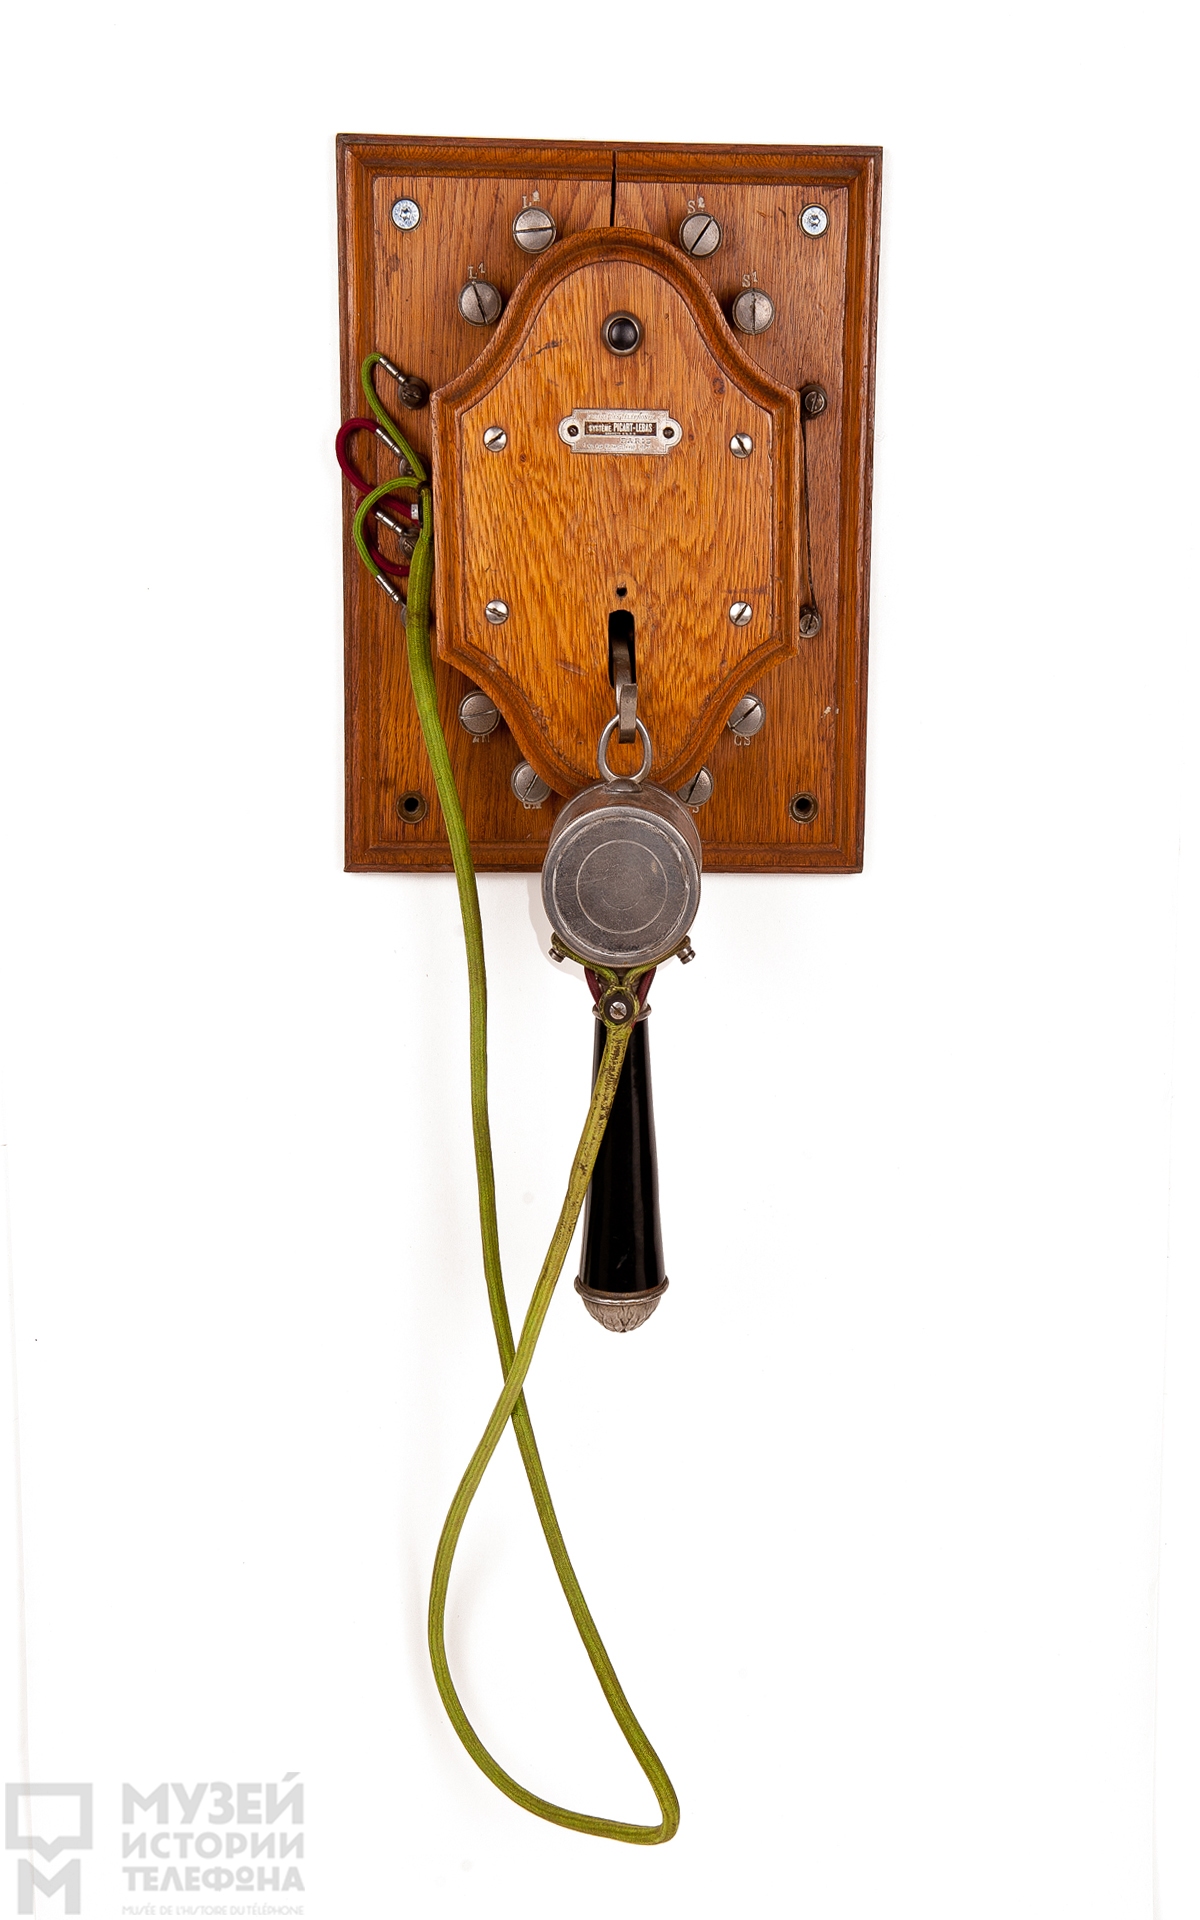 Телефонный аппарат батарейного вызова в деревянном корпусе, система МБ